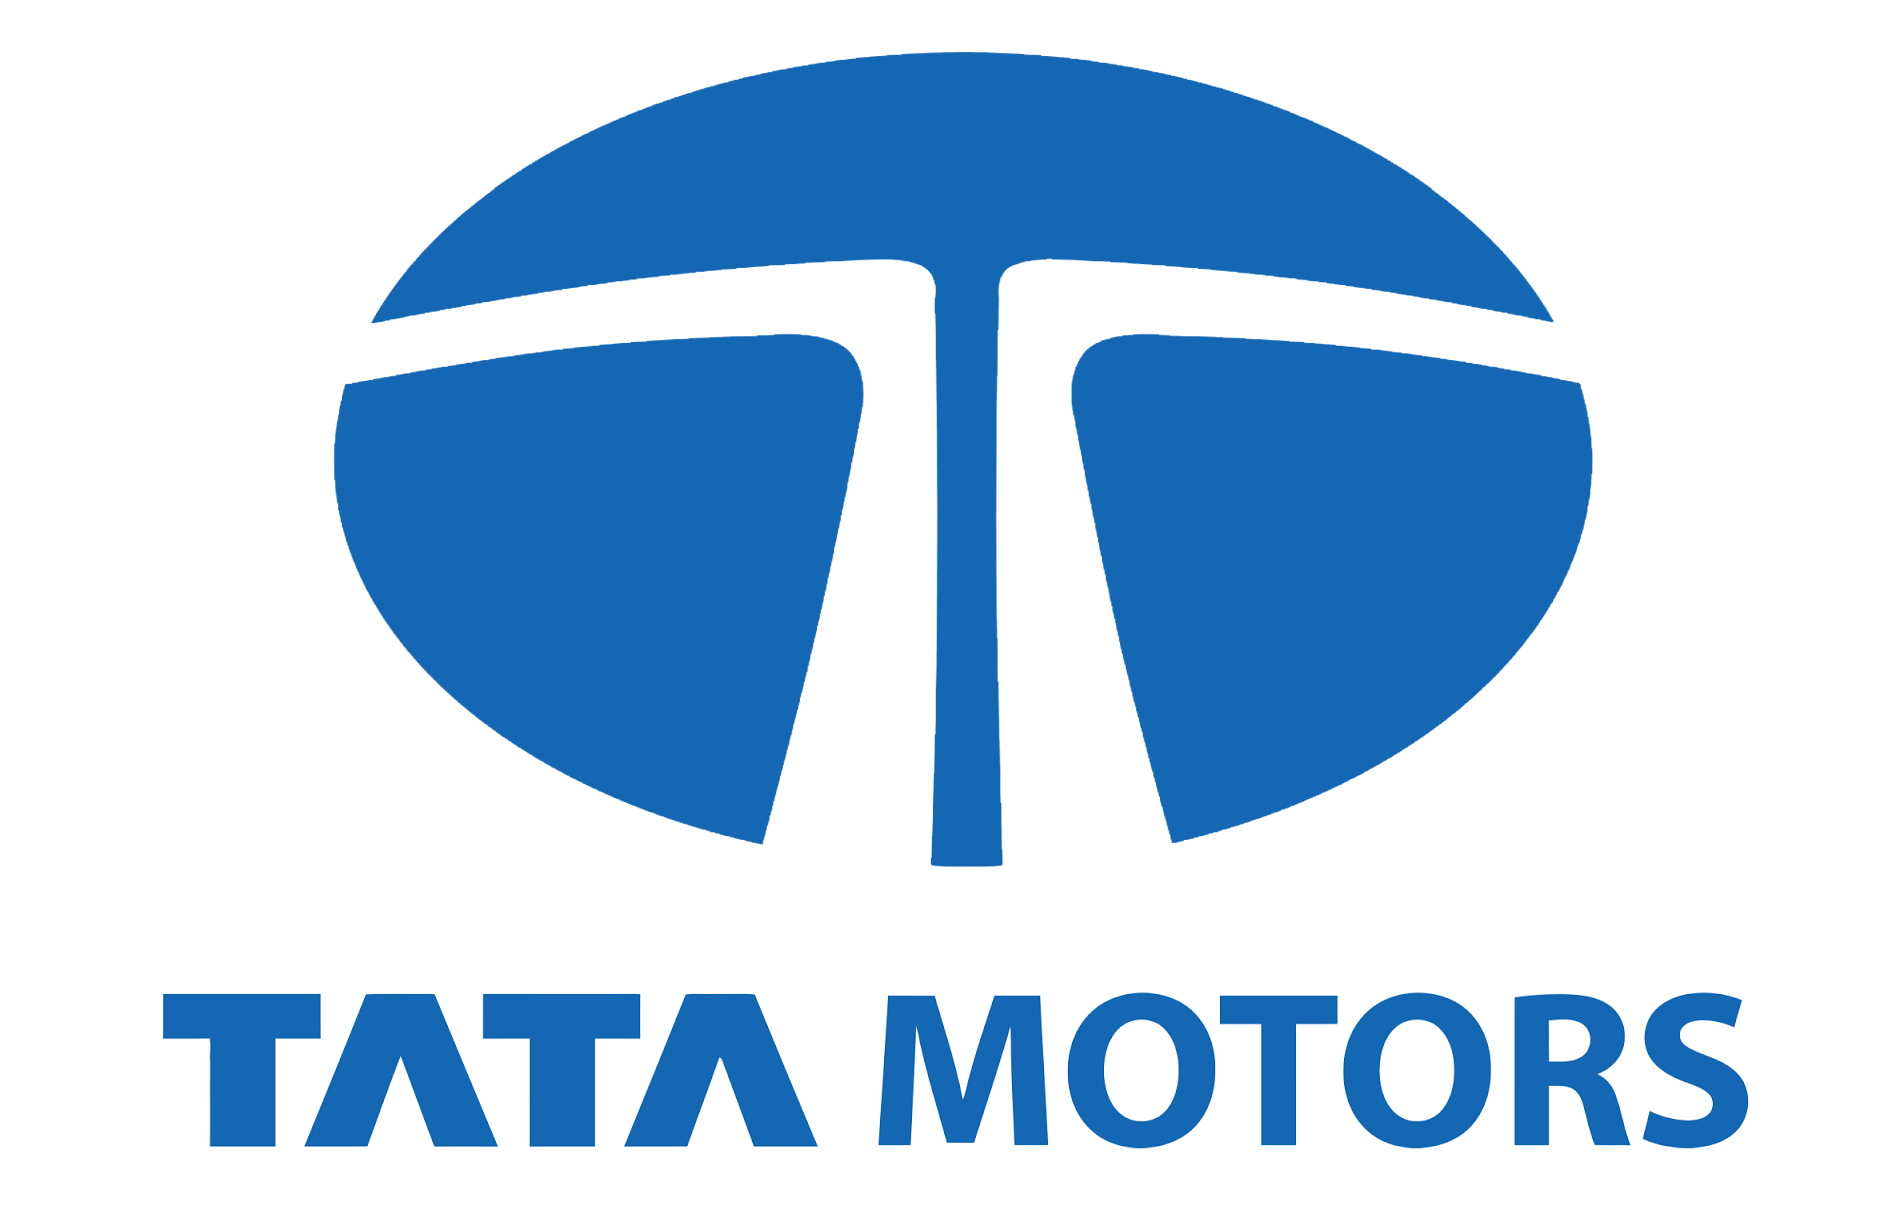 Tata Motors Cars Showroom - Kropex Auto Pvt Ltd|Repair Services|Automotive